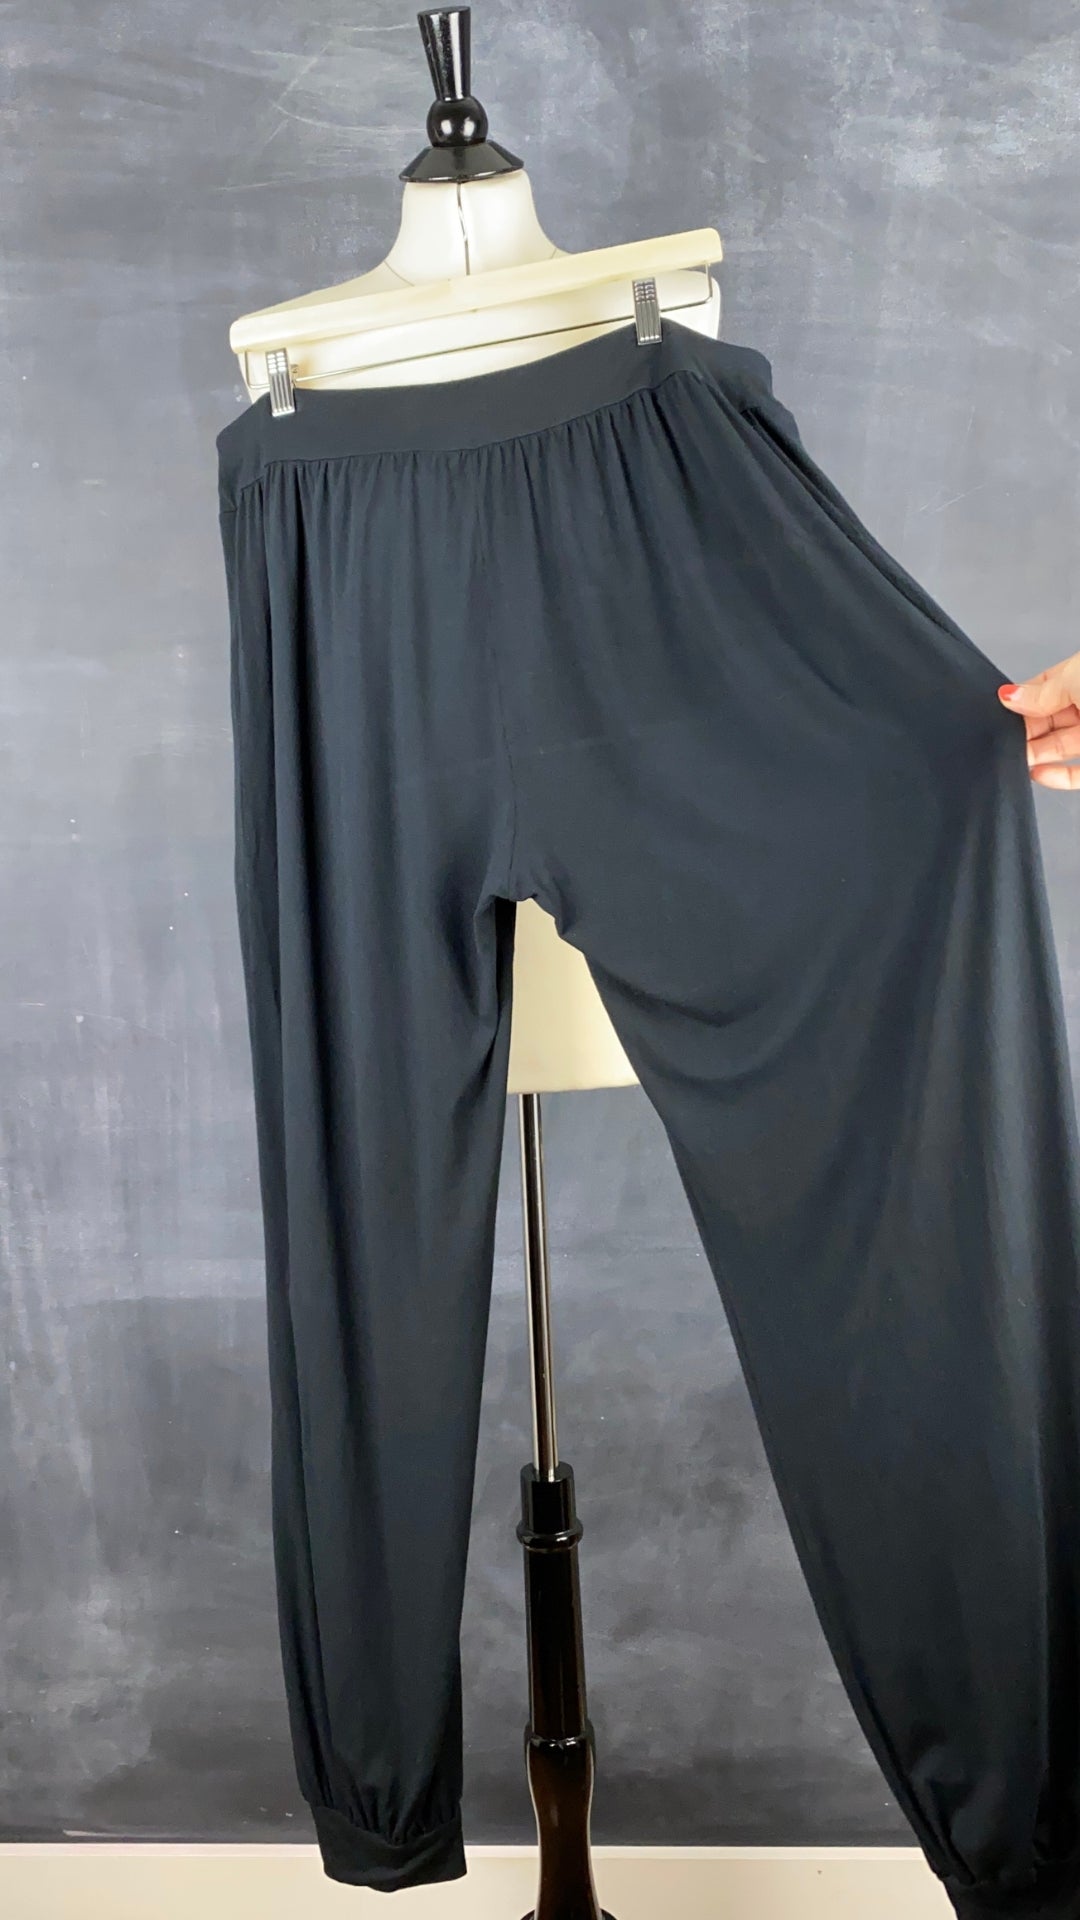 Pantalon détente confortable noir Respecterre, taille 2xl. Vue de l'ampleur de la cuisse.